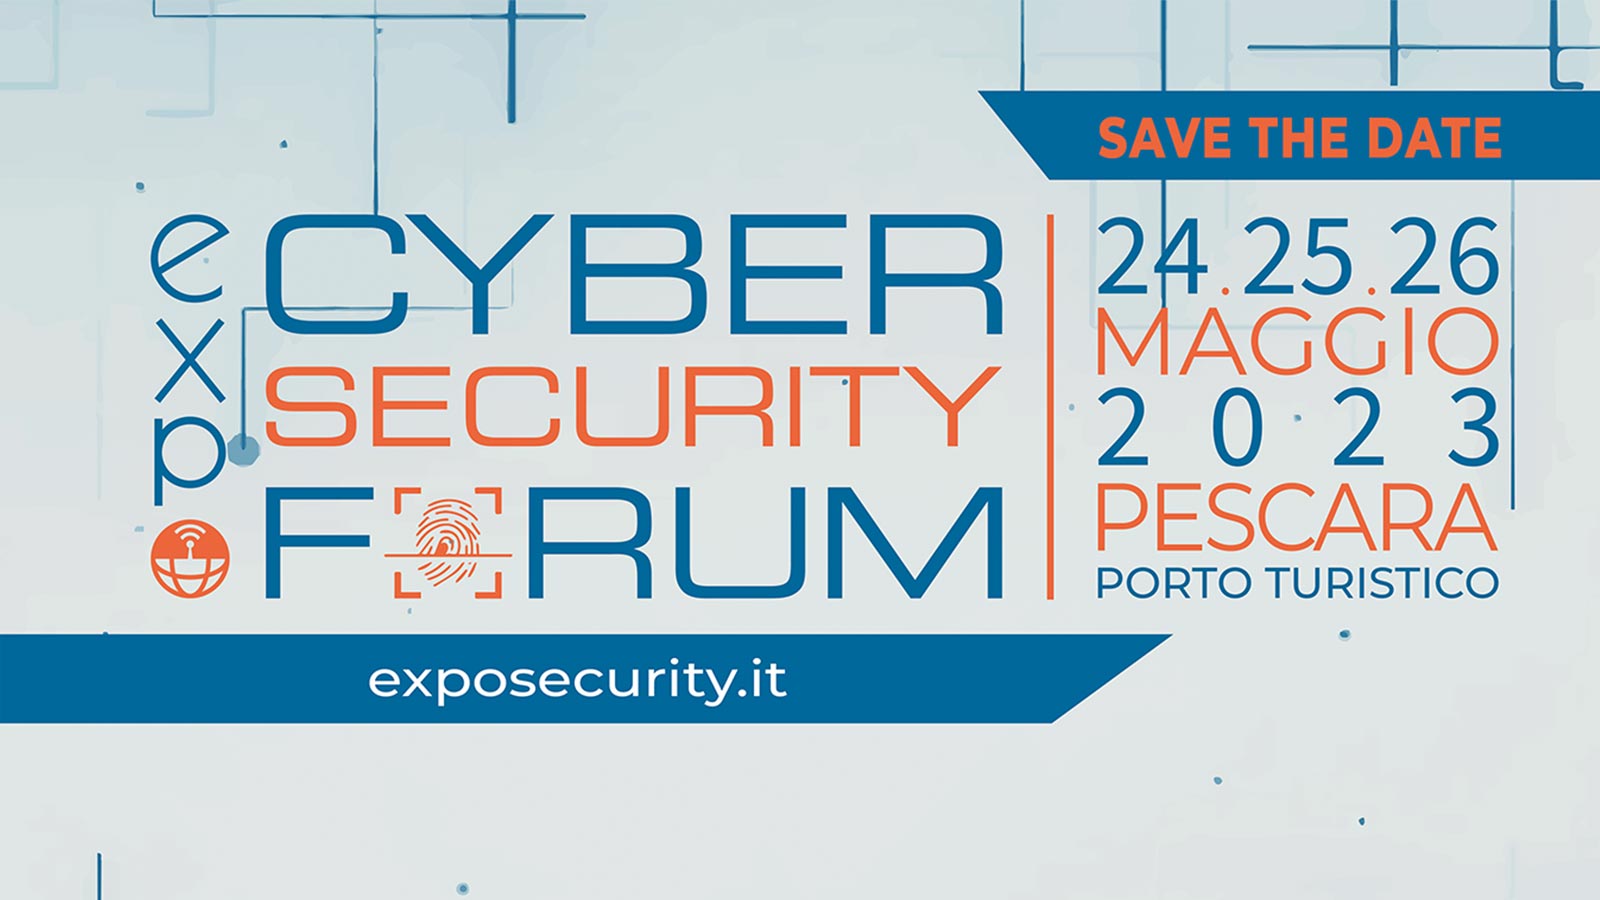 Infobasic partecipa all’Expo Security di Pescara / 24, 25, 26 Maggio 2023